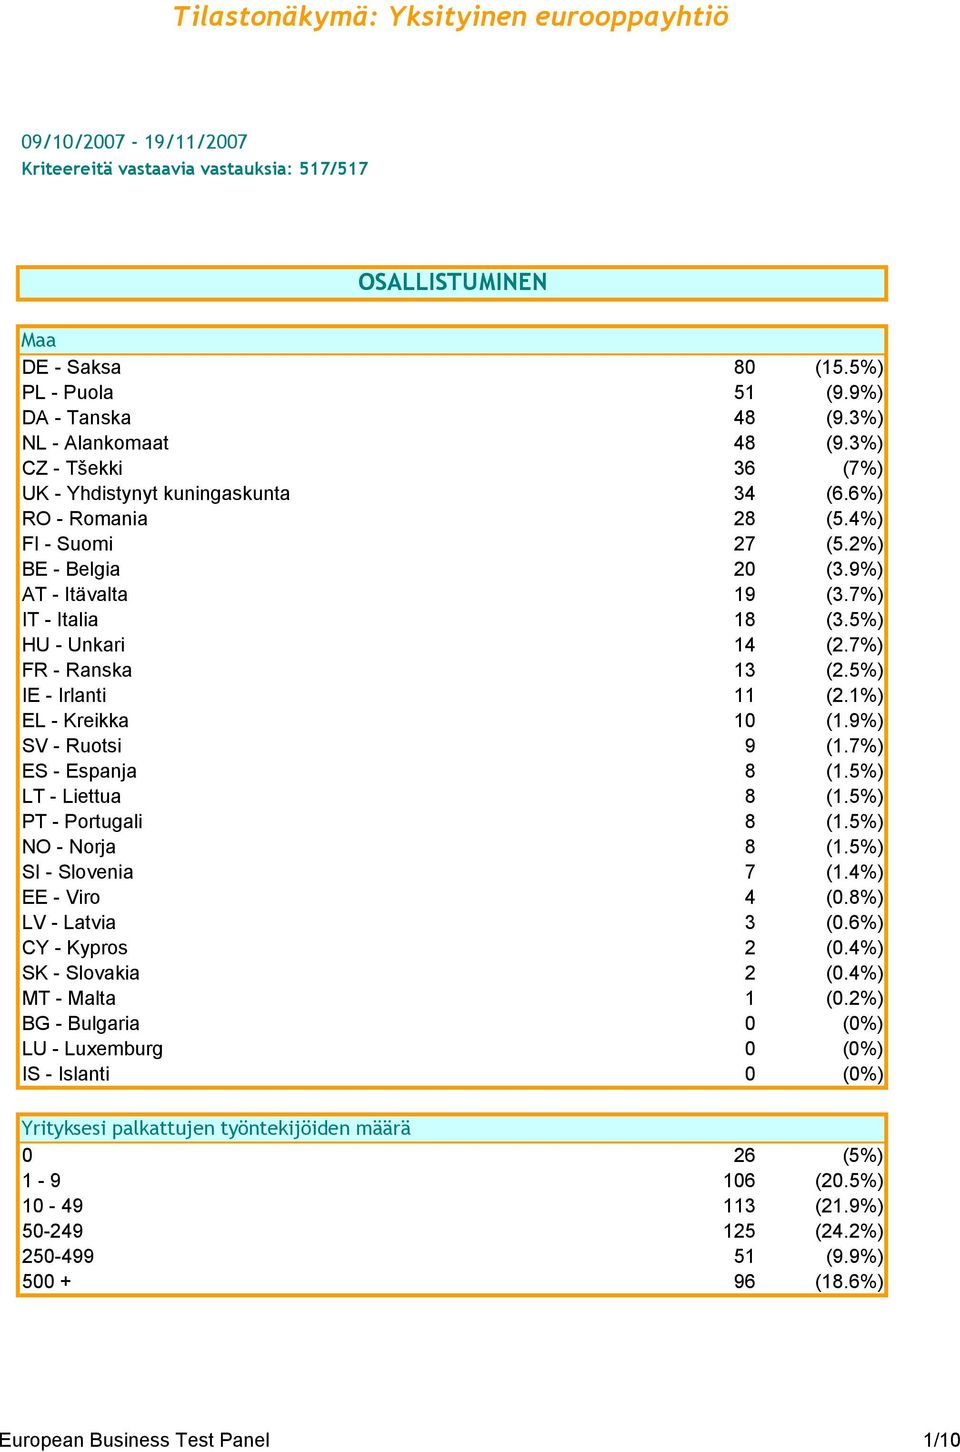 5%) HU - Unkari 14 (2.7%) FR - Ranska 13 (2.5%) IE - Irlanti 11 (2.1%) EL - Kreikka 10 (1.9%) SV - Ruotsi 9 (1.7%) ES - Espanja 8 (1.5%) LT - Liettua 8 (1.5%) PT - Portugali 8 (1.5%) NO - Norja 8 (1.